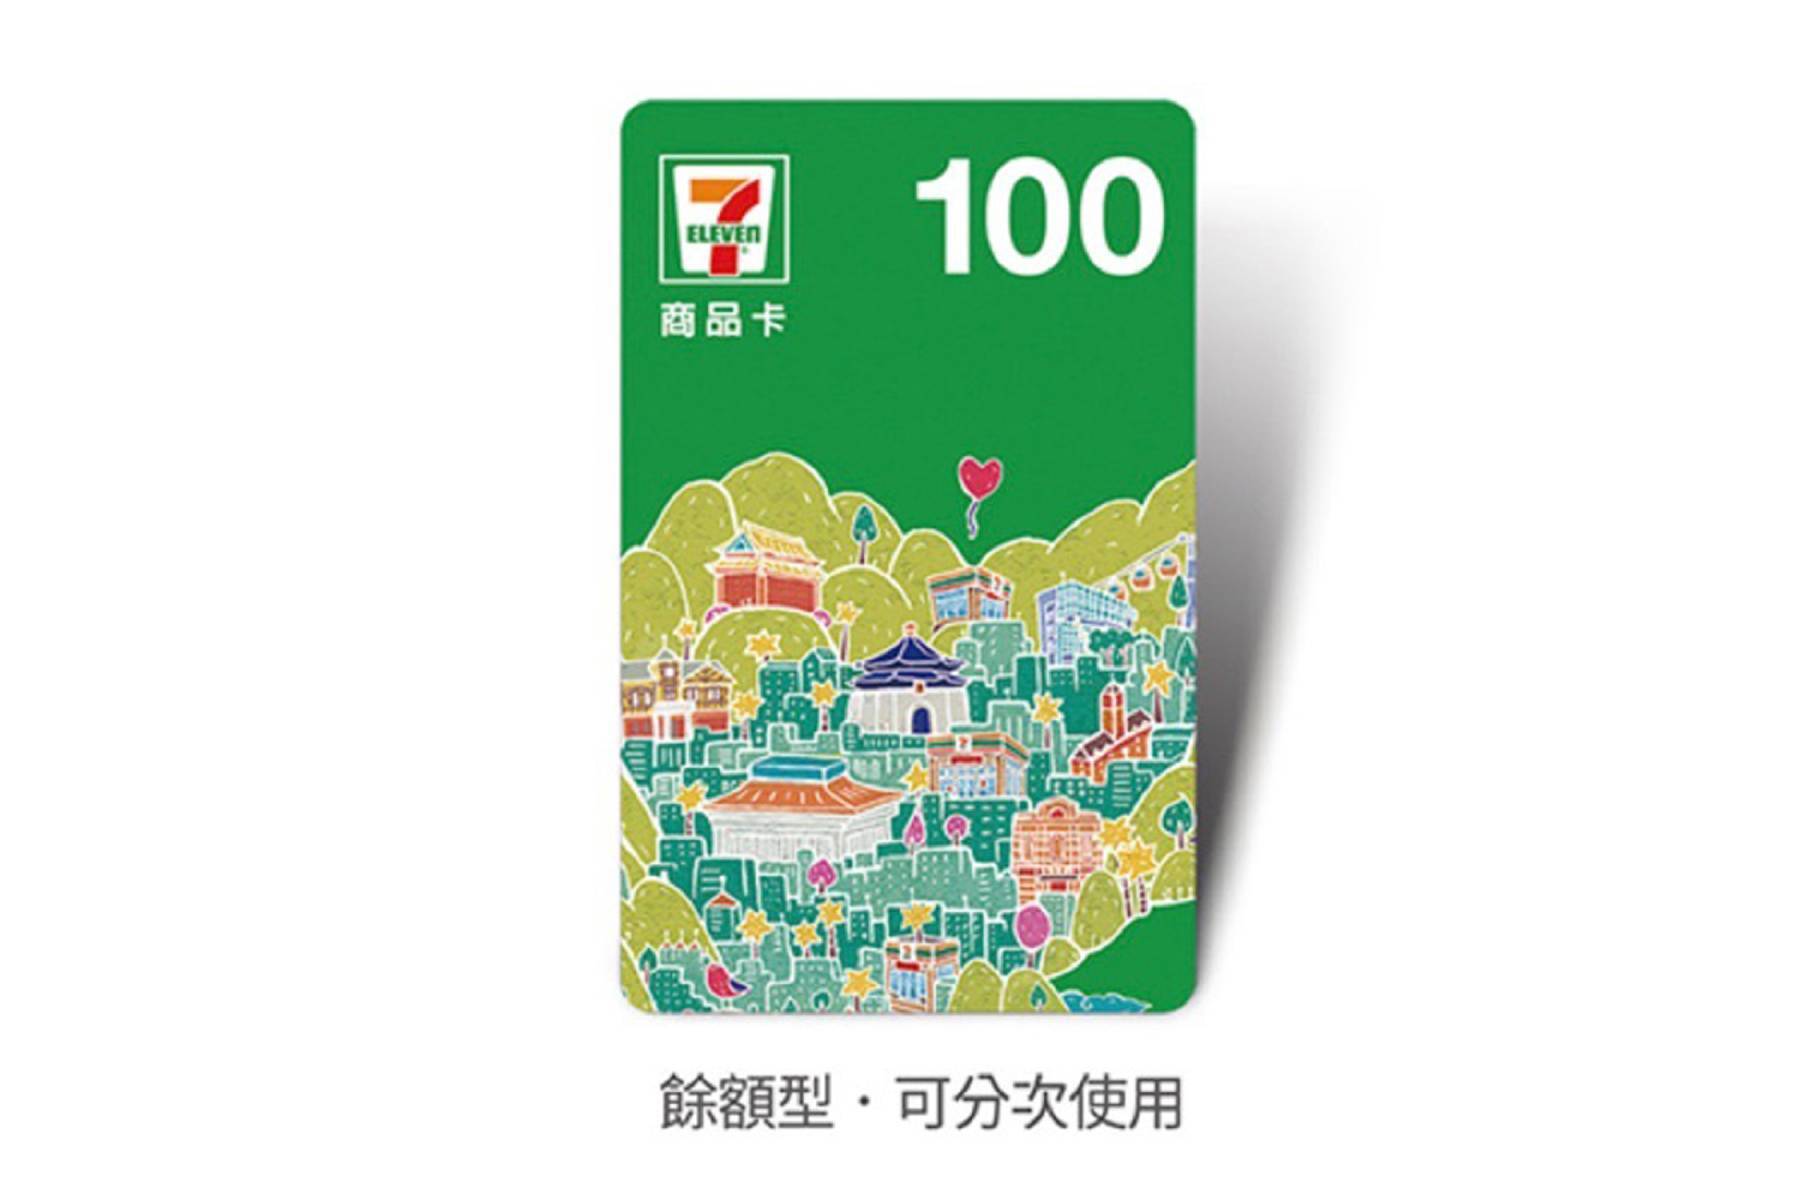 統一超商7-11商品卡100元1